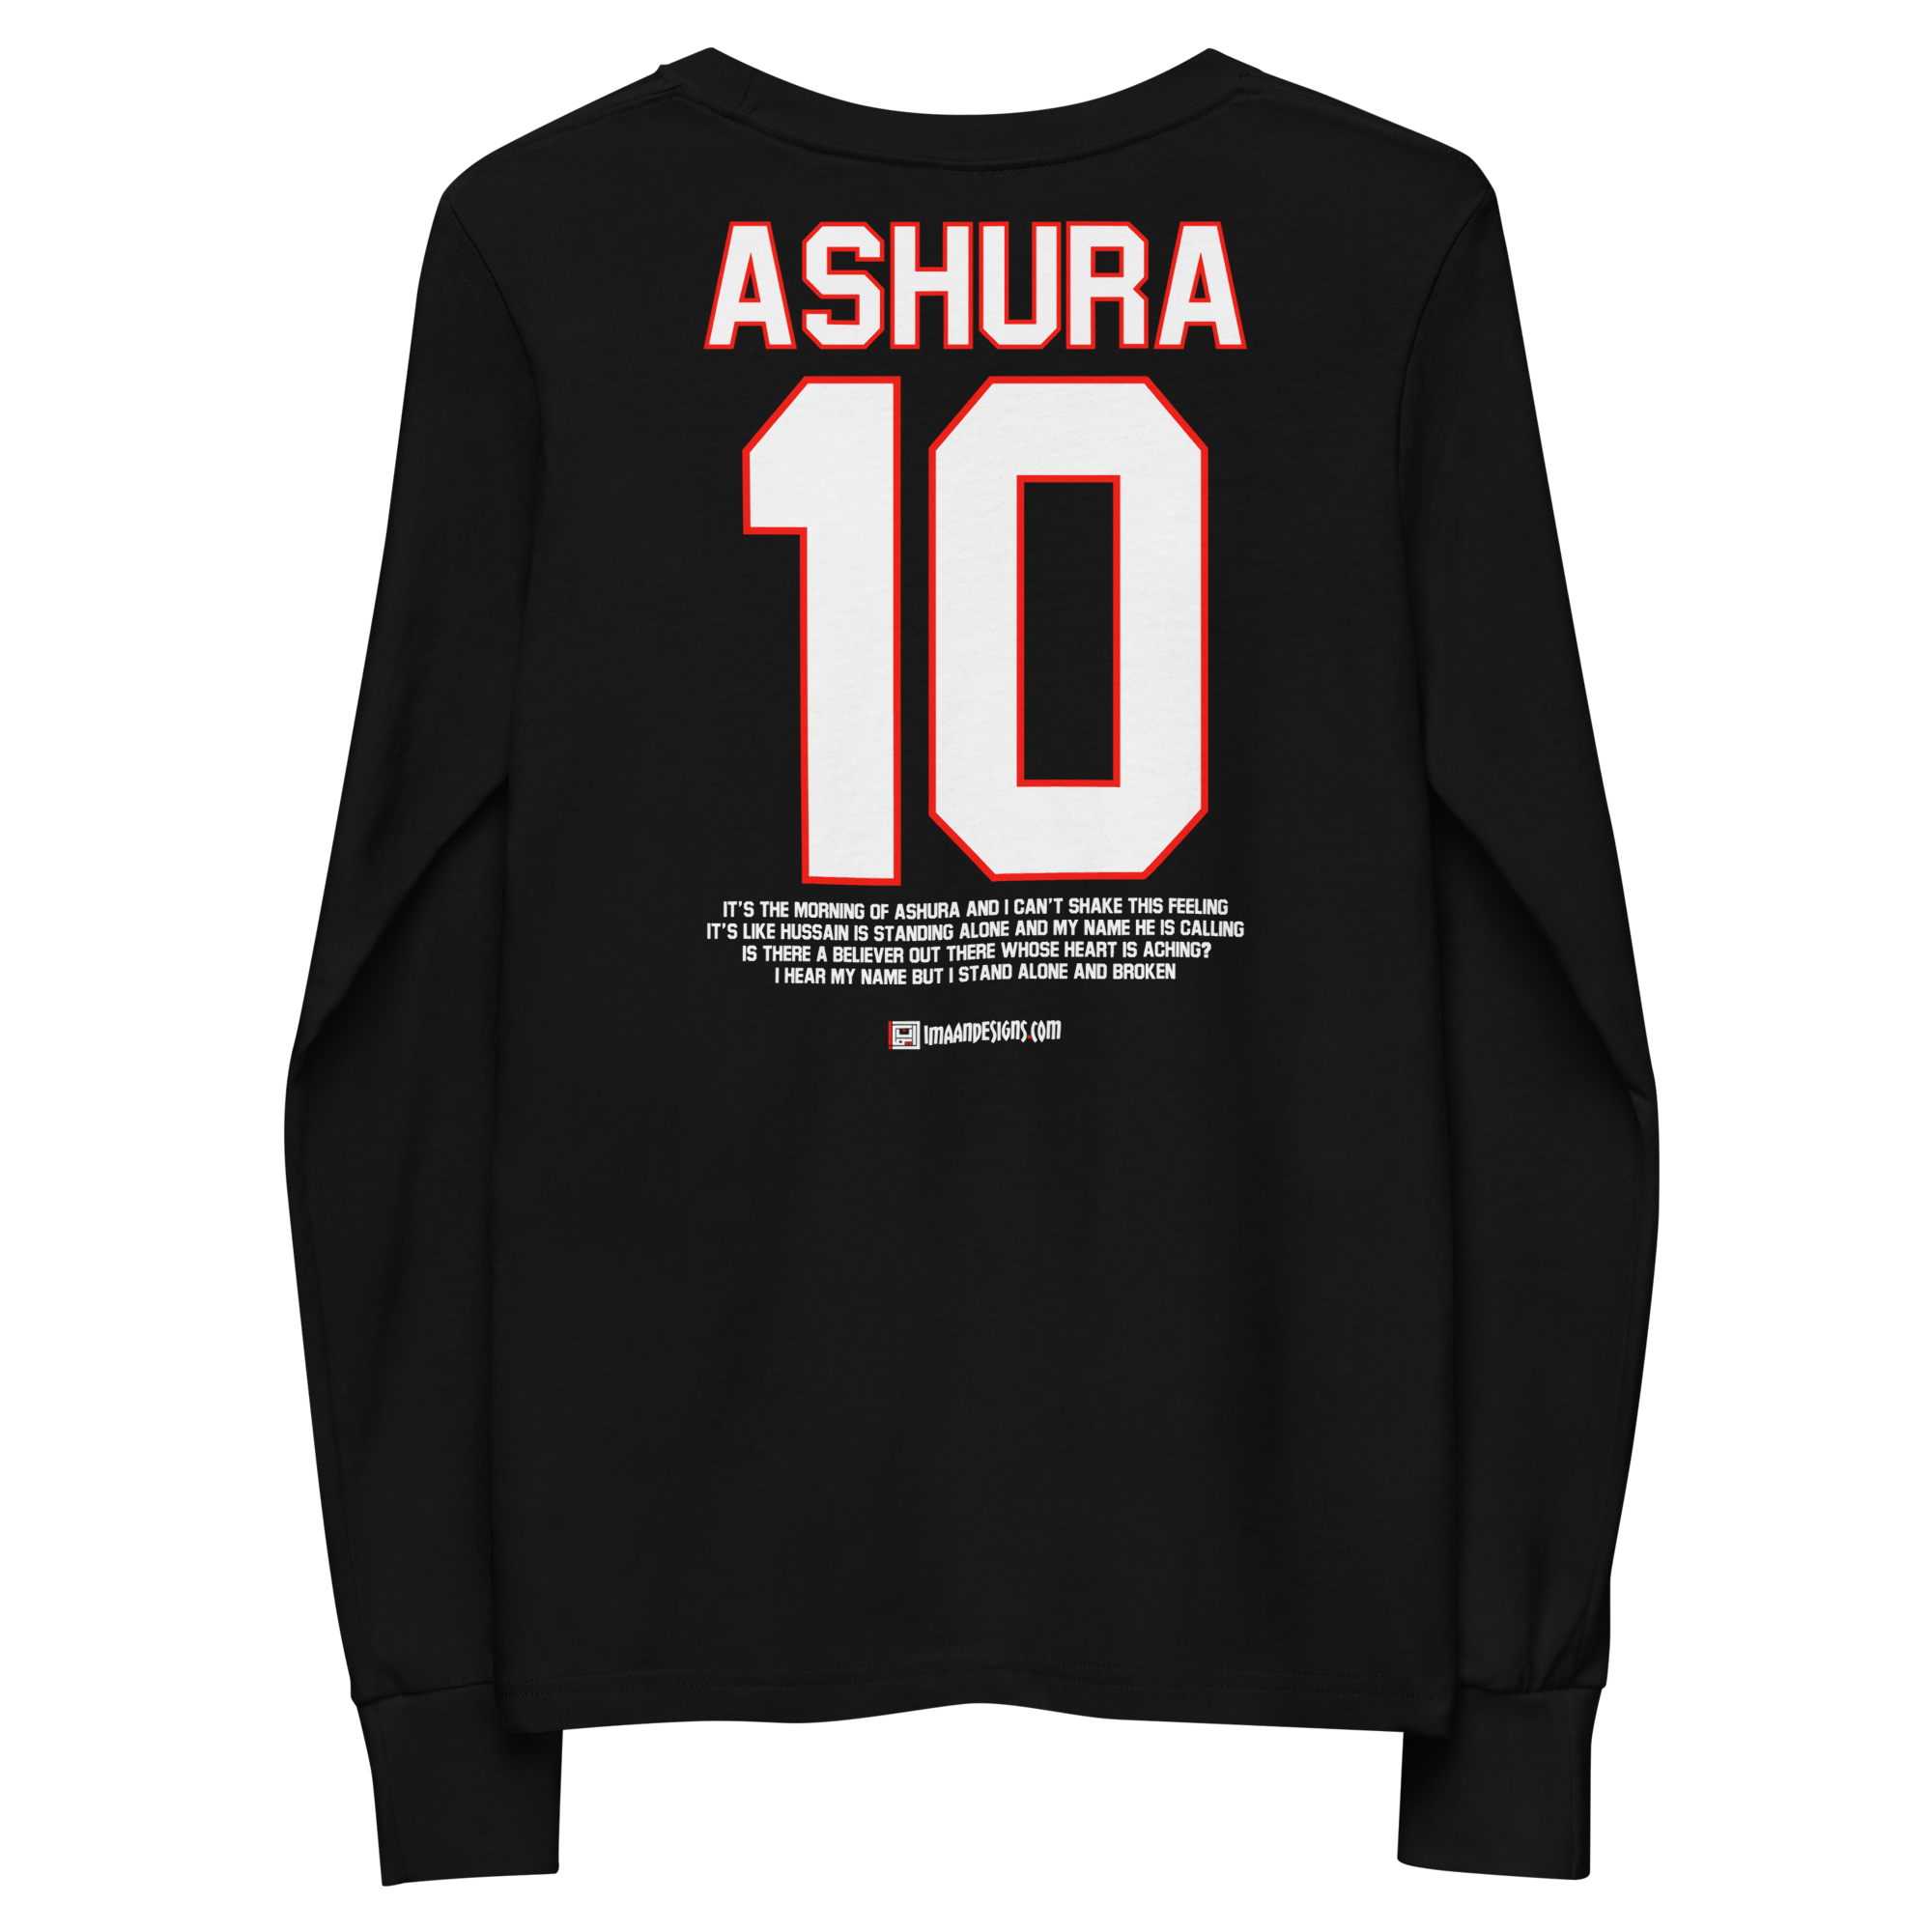 Ashura 10 - Youth Long Sleeve